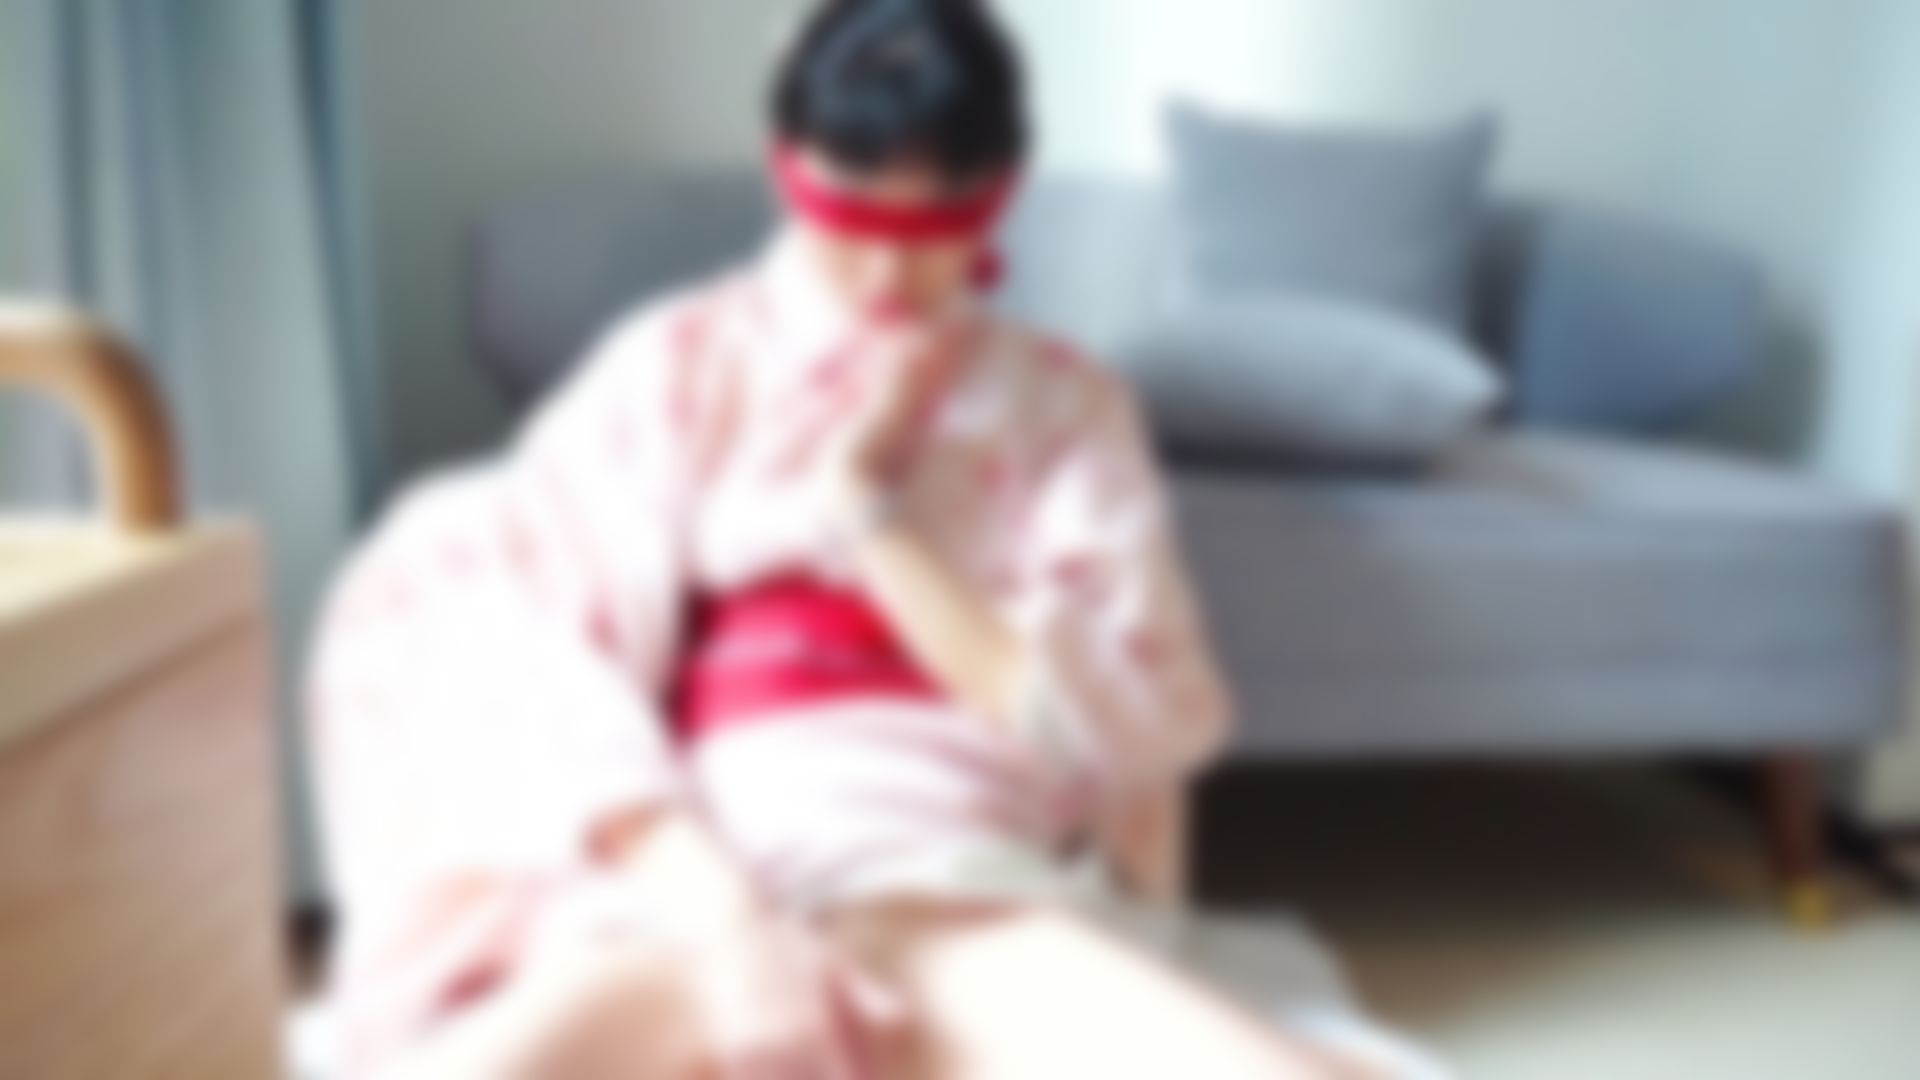 iam_neko : I AM Neko-Kimono girl 穿和服在旅館慰慰/吃棒棒 玩得超級爽 水和白漿一起流